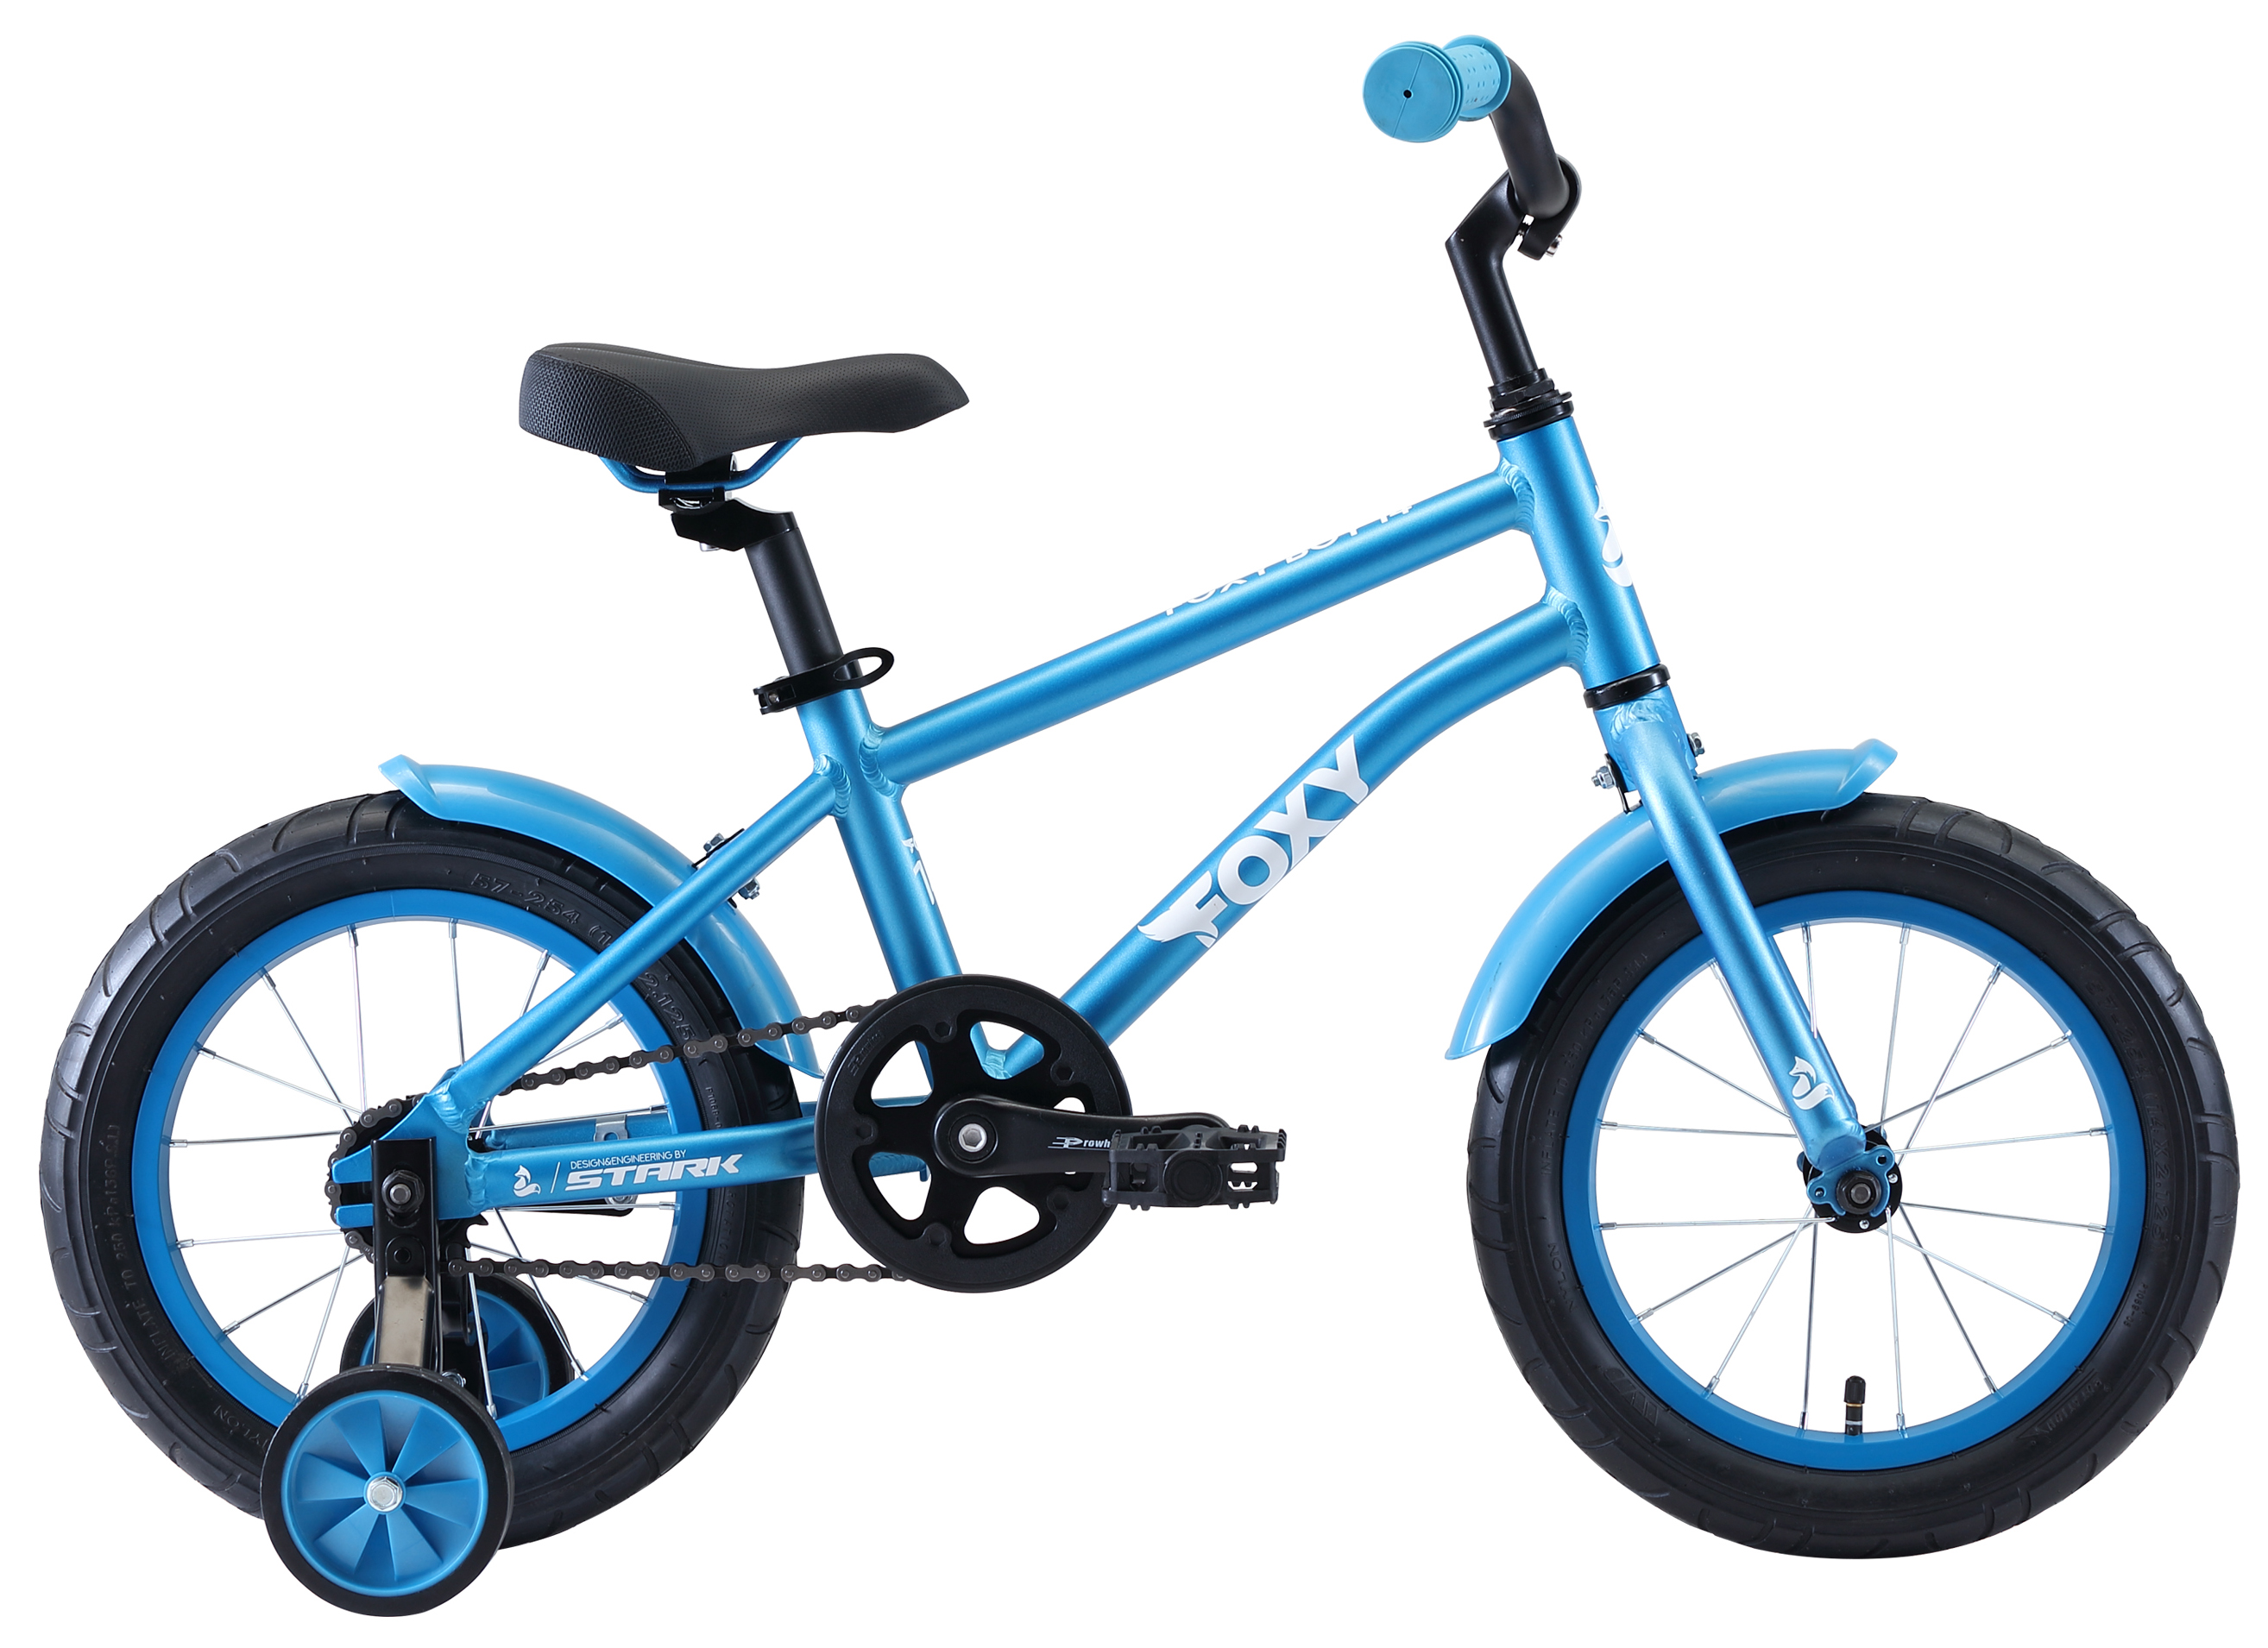  Отзывы о Детском велосипеде Stark Foxy 14 Boy 2020